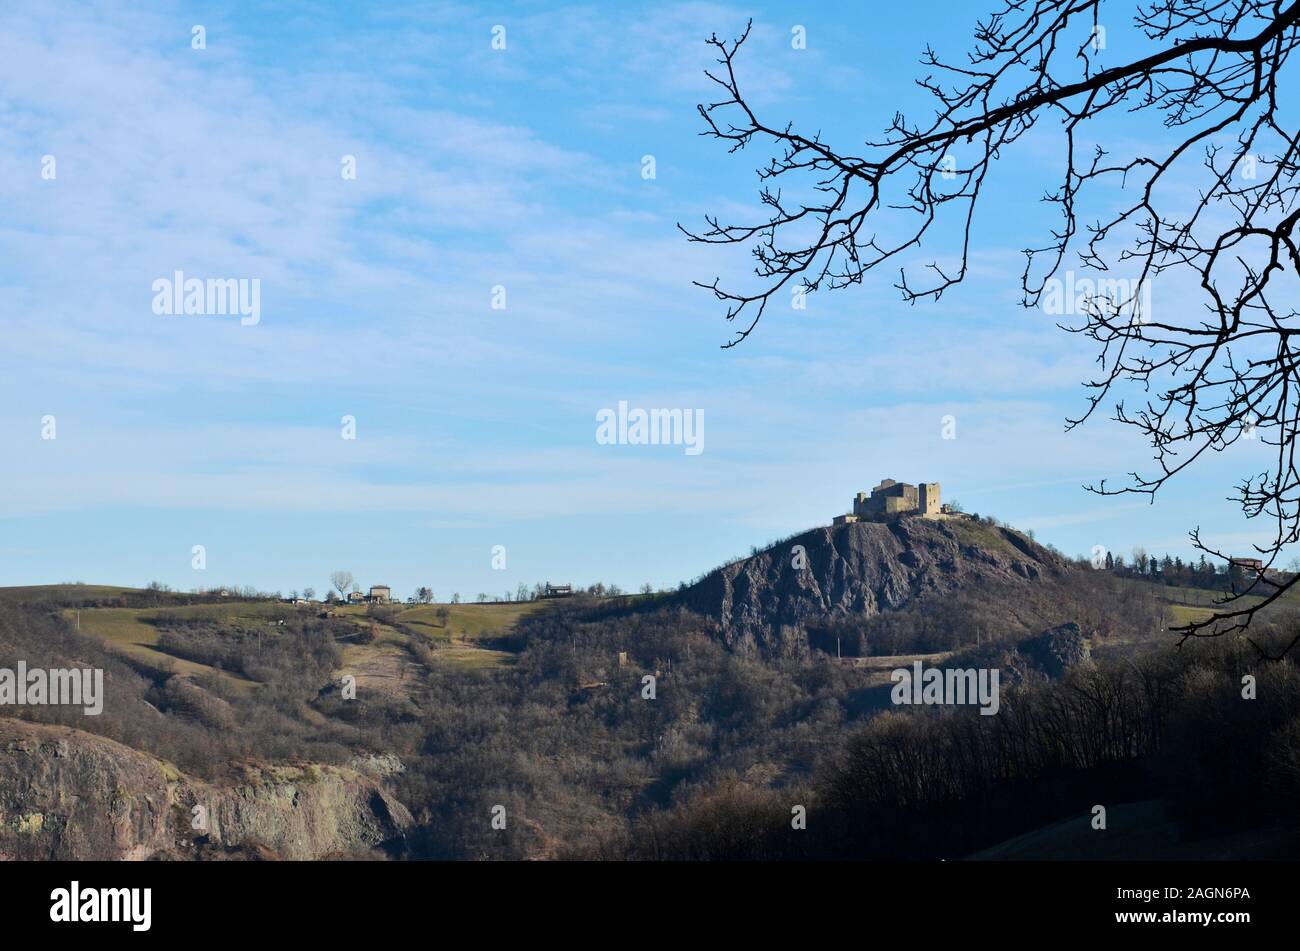 Il castello di Rossena è situato nella zona delle Terre Matildiche nell'Apennino Reggiano. I resti del castello, salire su un colore rossastro scogliera vulcanica Foto Stock